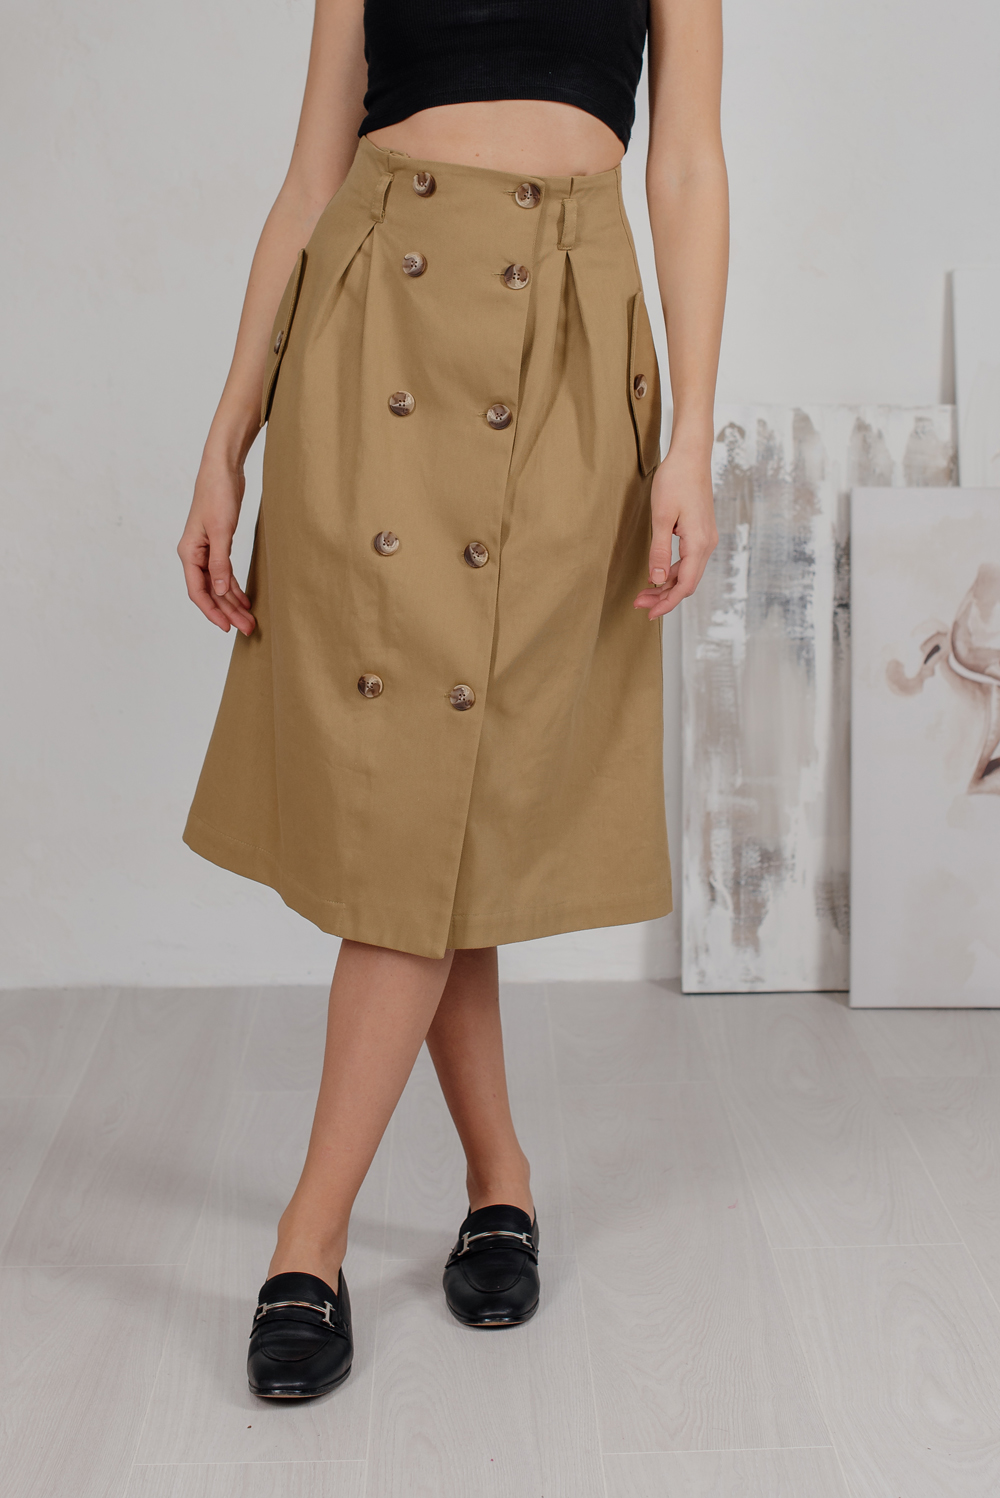 Buttoned midi skirt in safari style